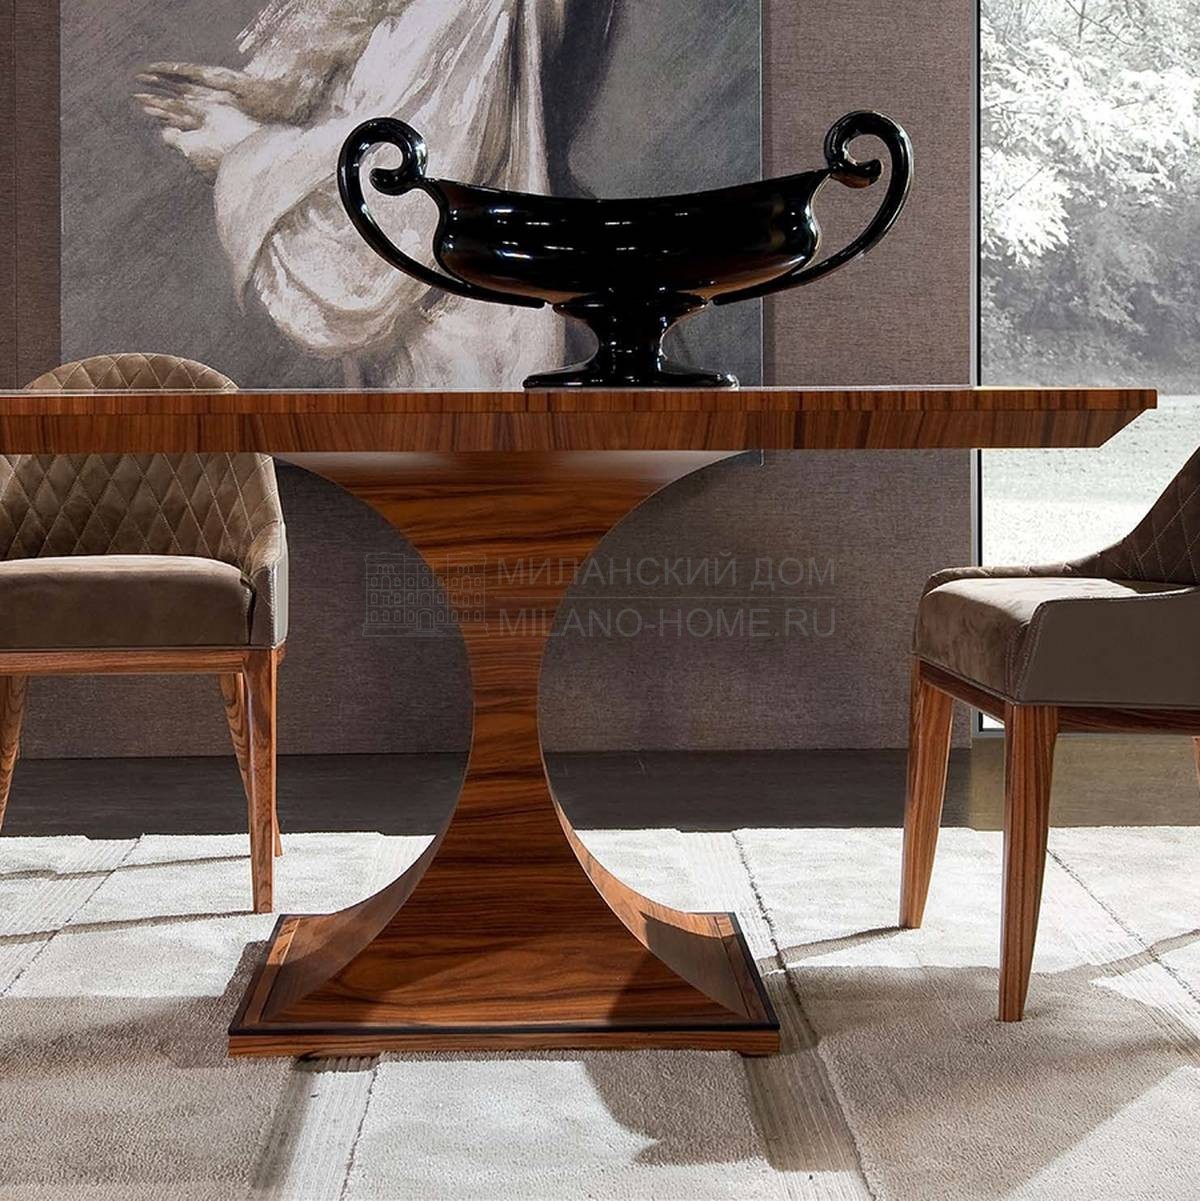 Обеденный стол Art. 5001 ROYAL из Италии фабрики MEDEA (Life style)